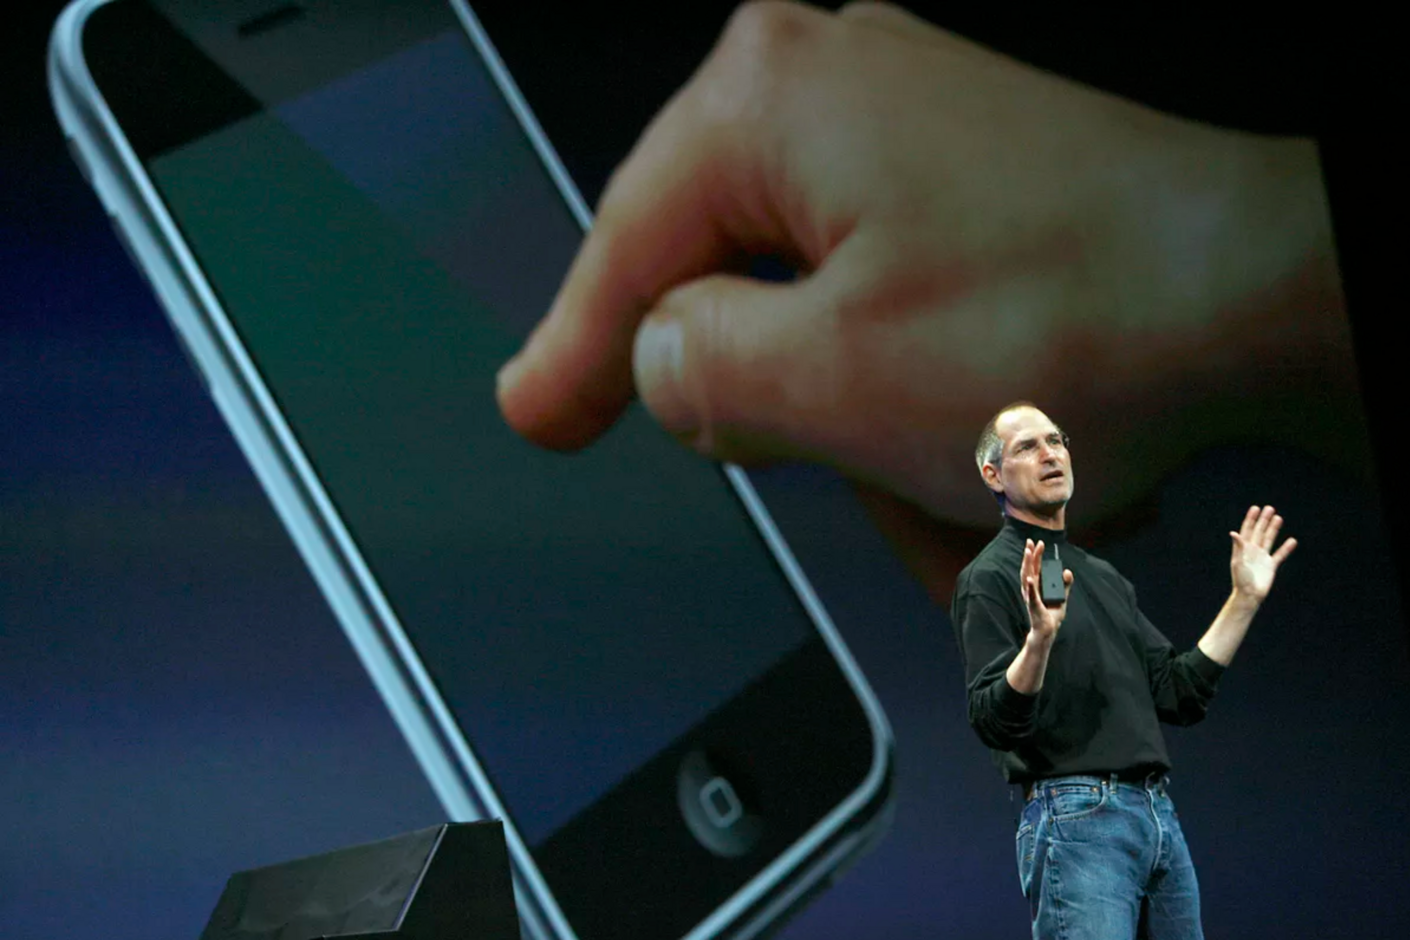 Стив Джобс — американский предприниматель, один из основателей компаний Apple и Pixar